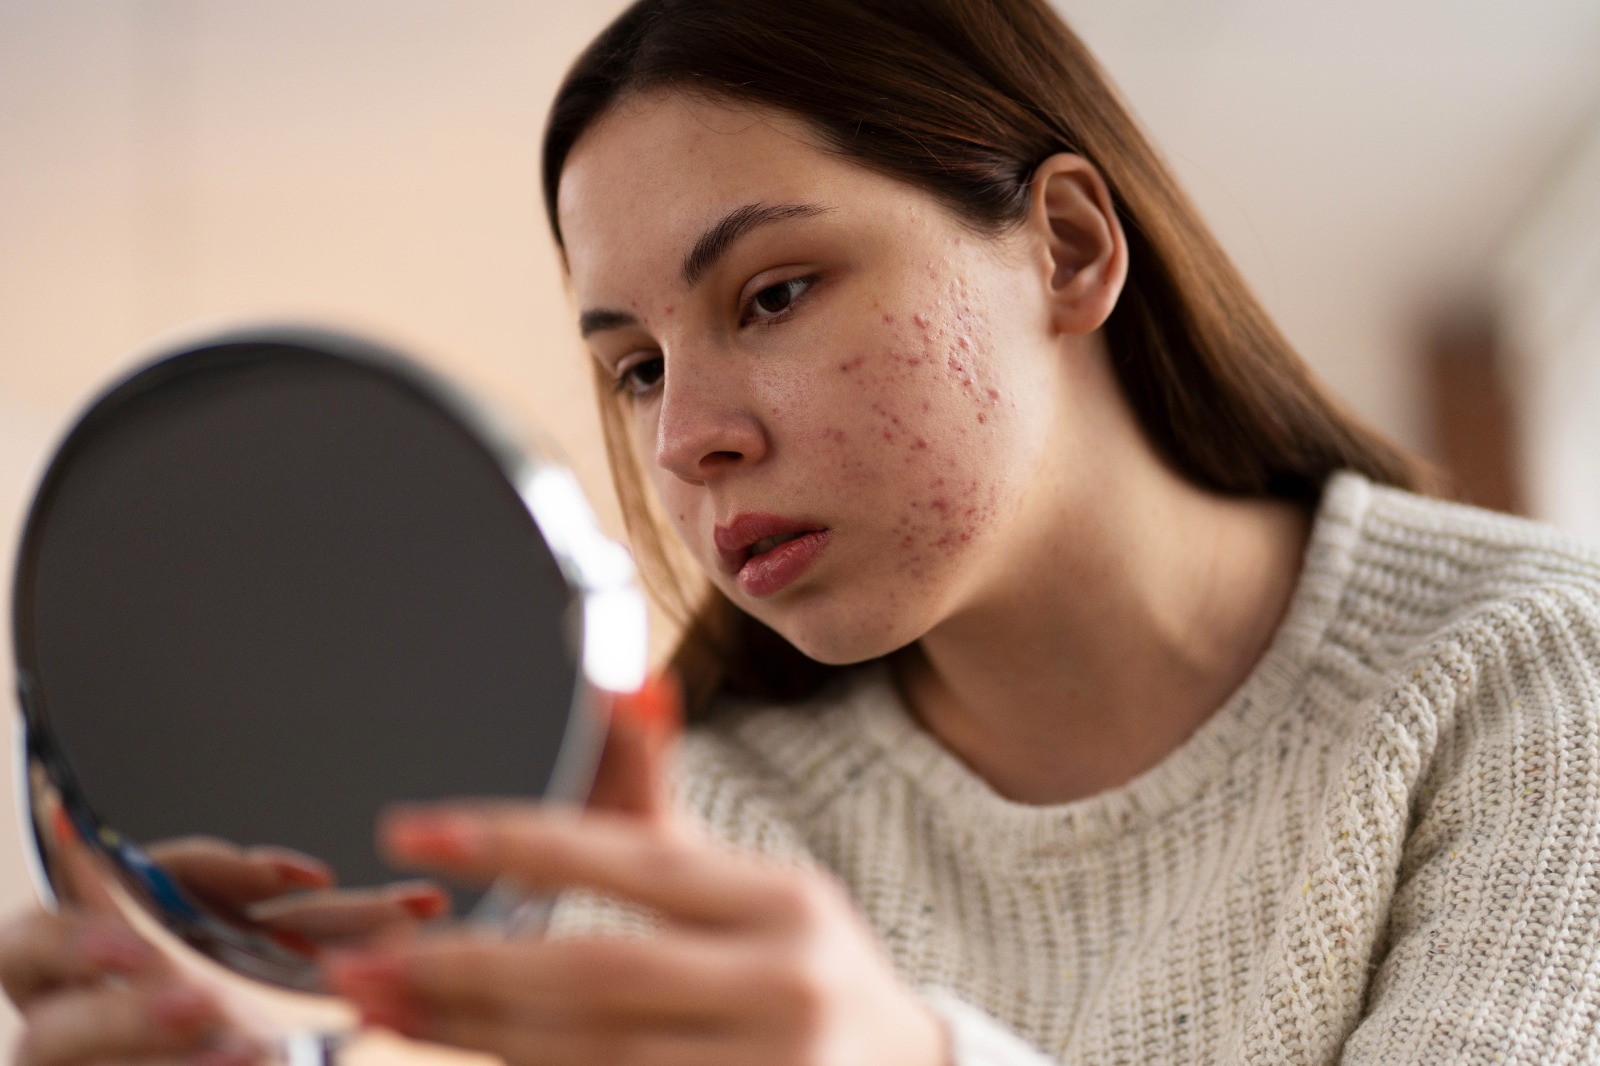 How do I remove acne scars?